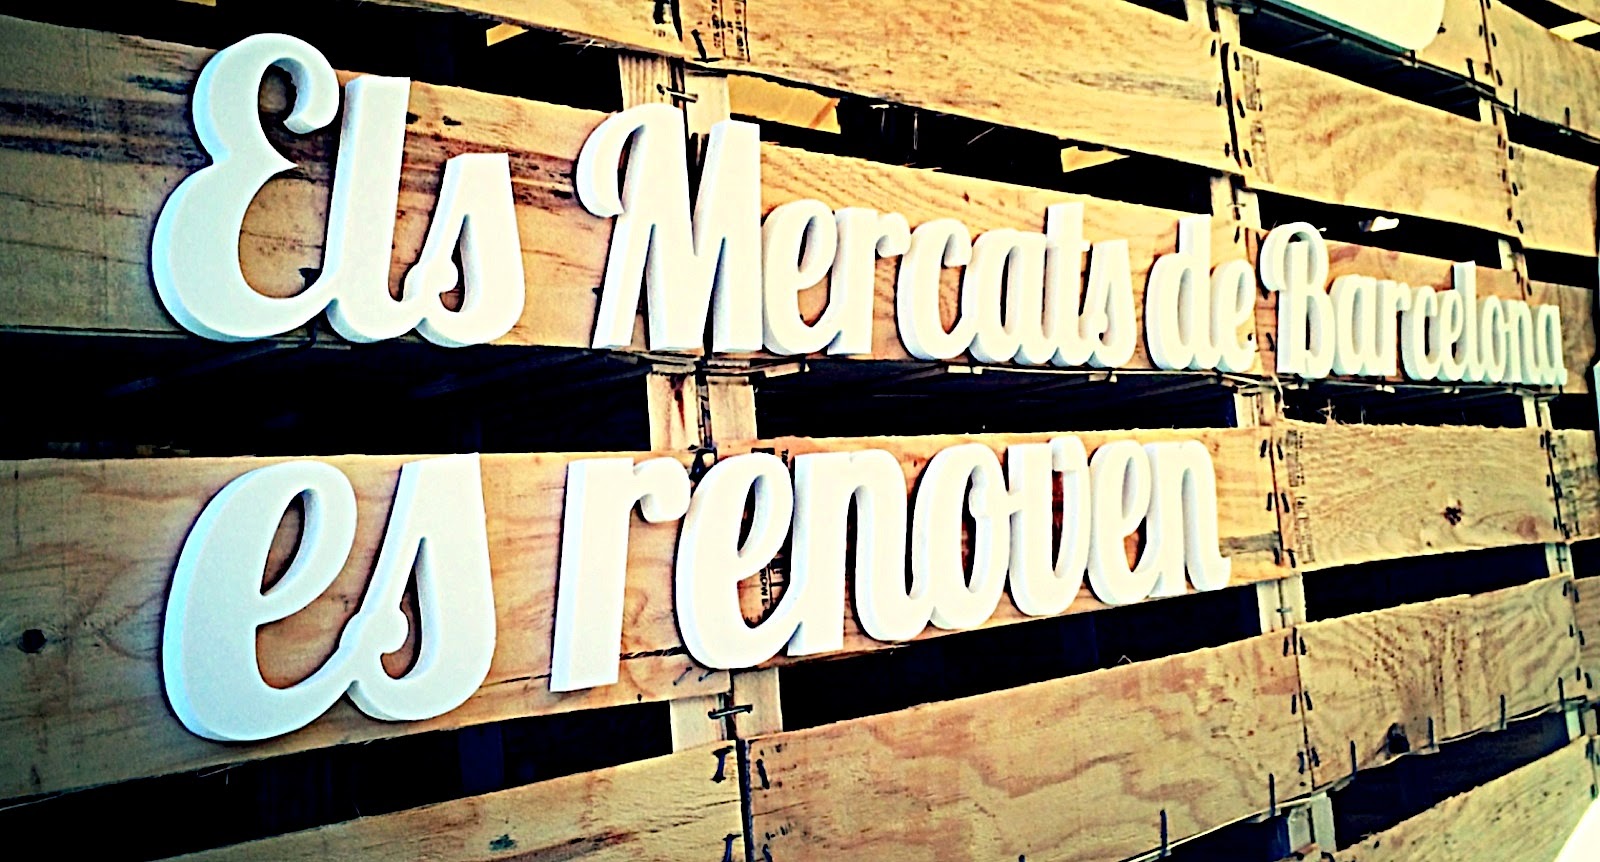 Mercat de Mercats 2014. La gran fiesta del producto y la gastronomía de Barcelona